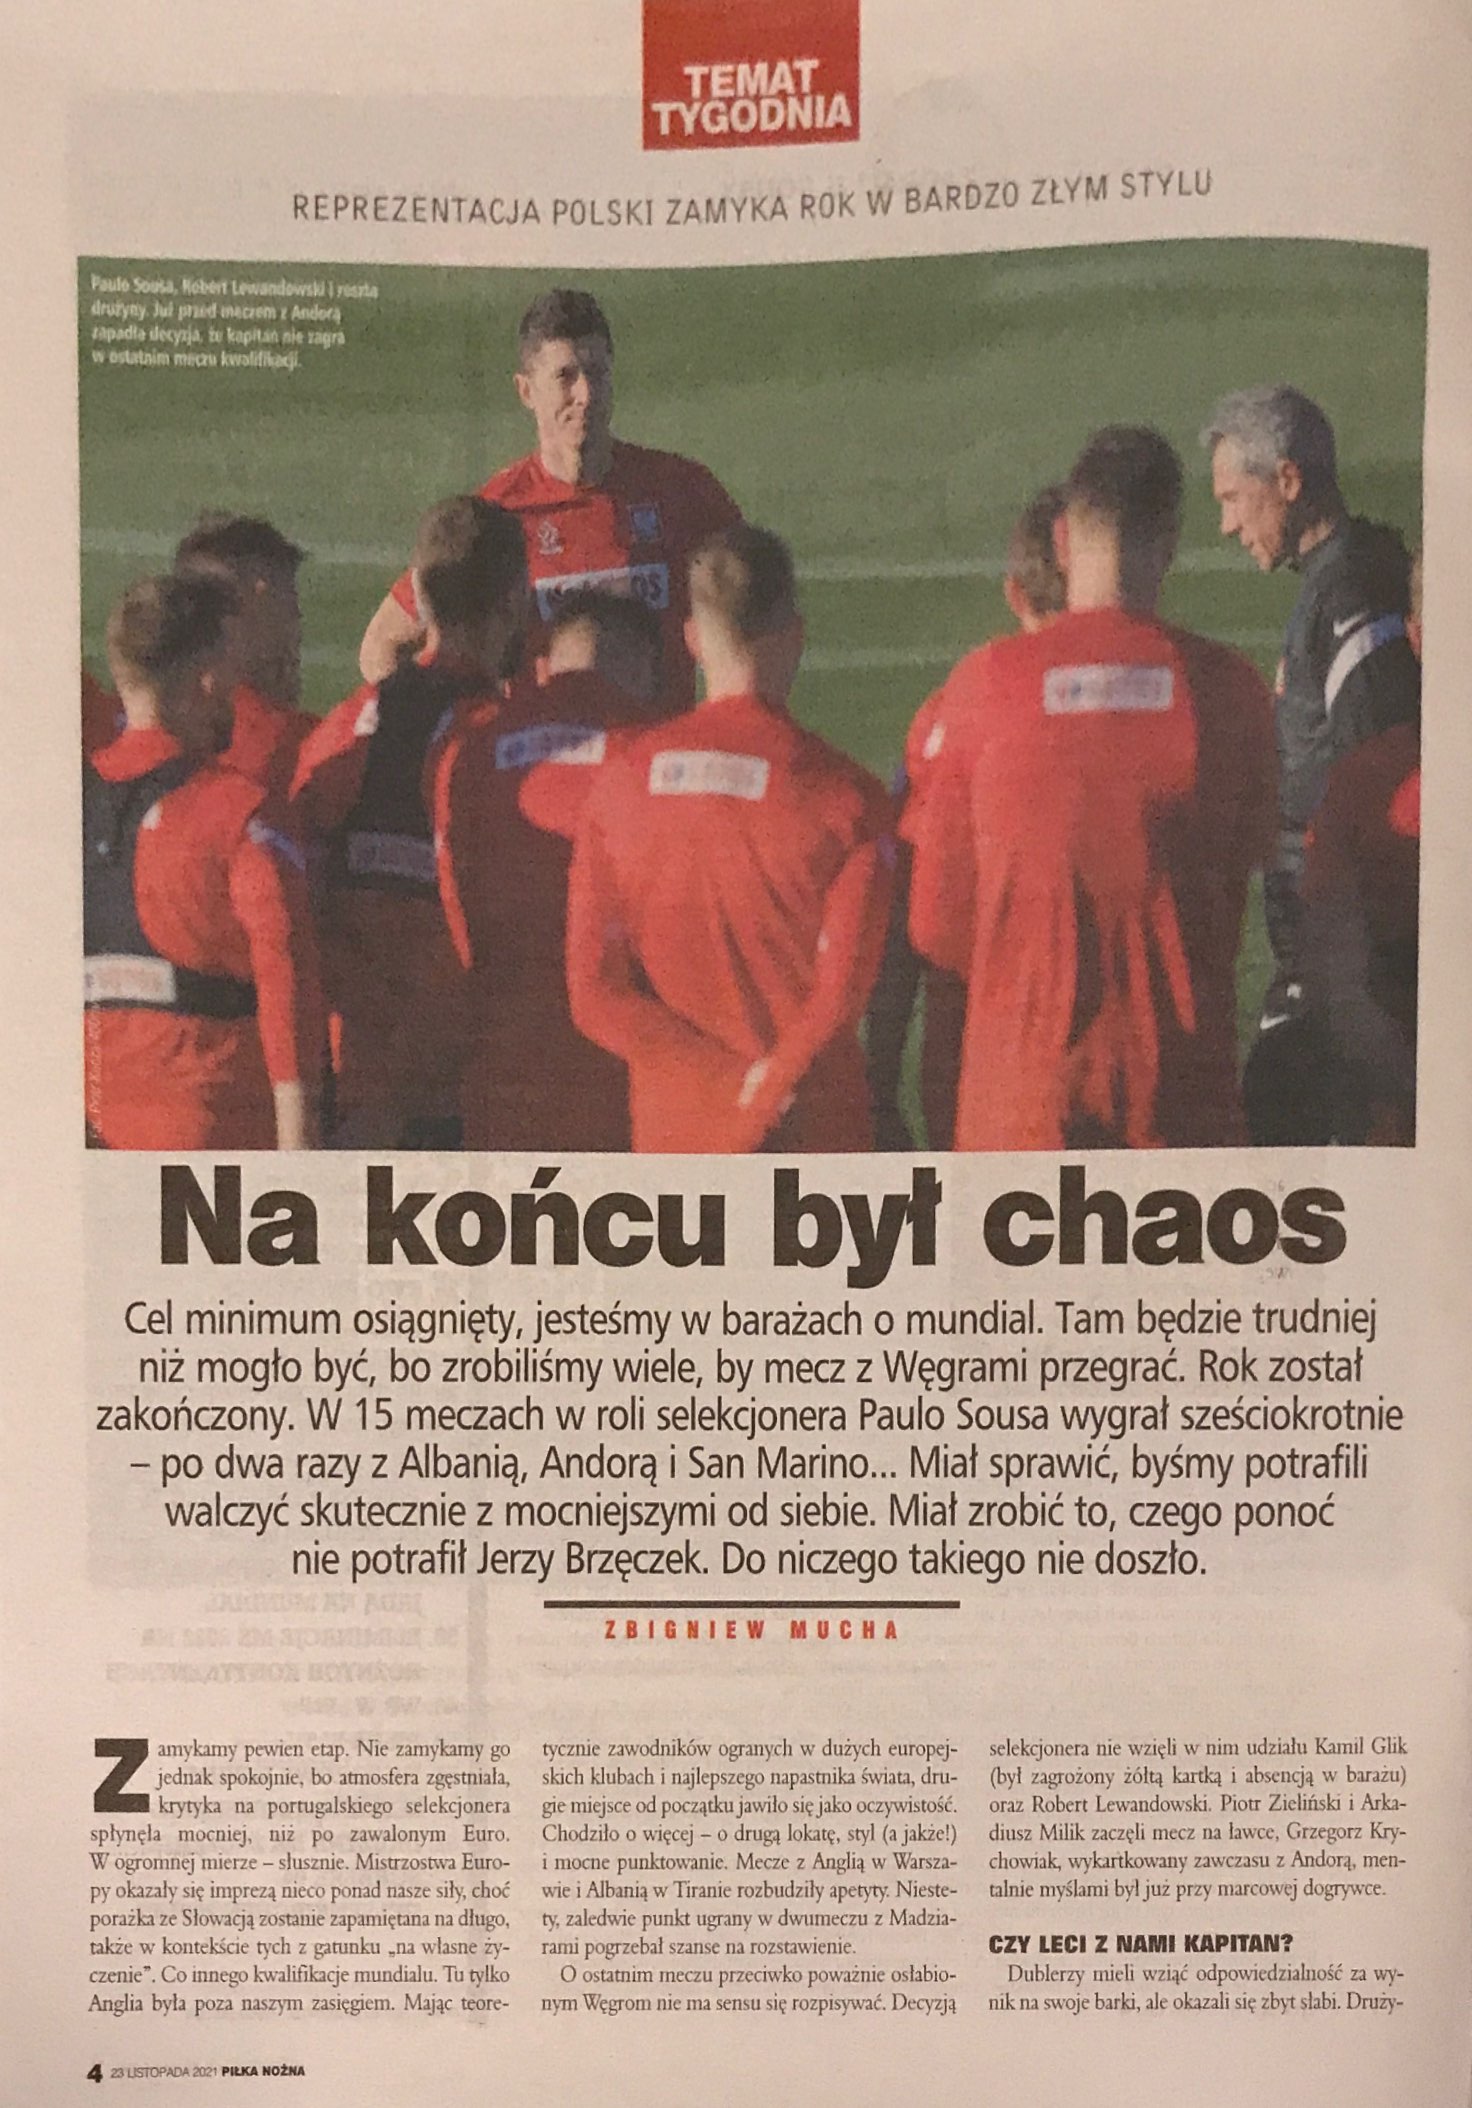 Piłka Nożna po meczu Węgry - Polska 1:2 (15.11.2021).